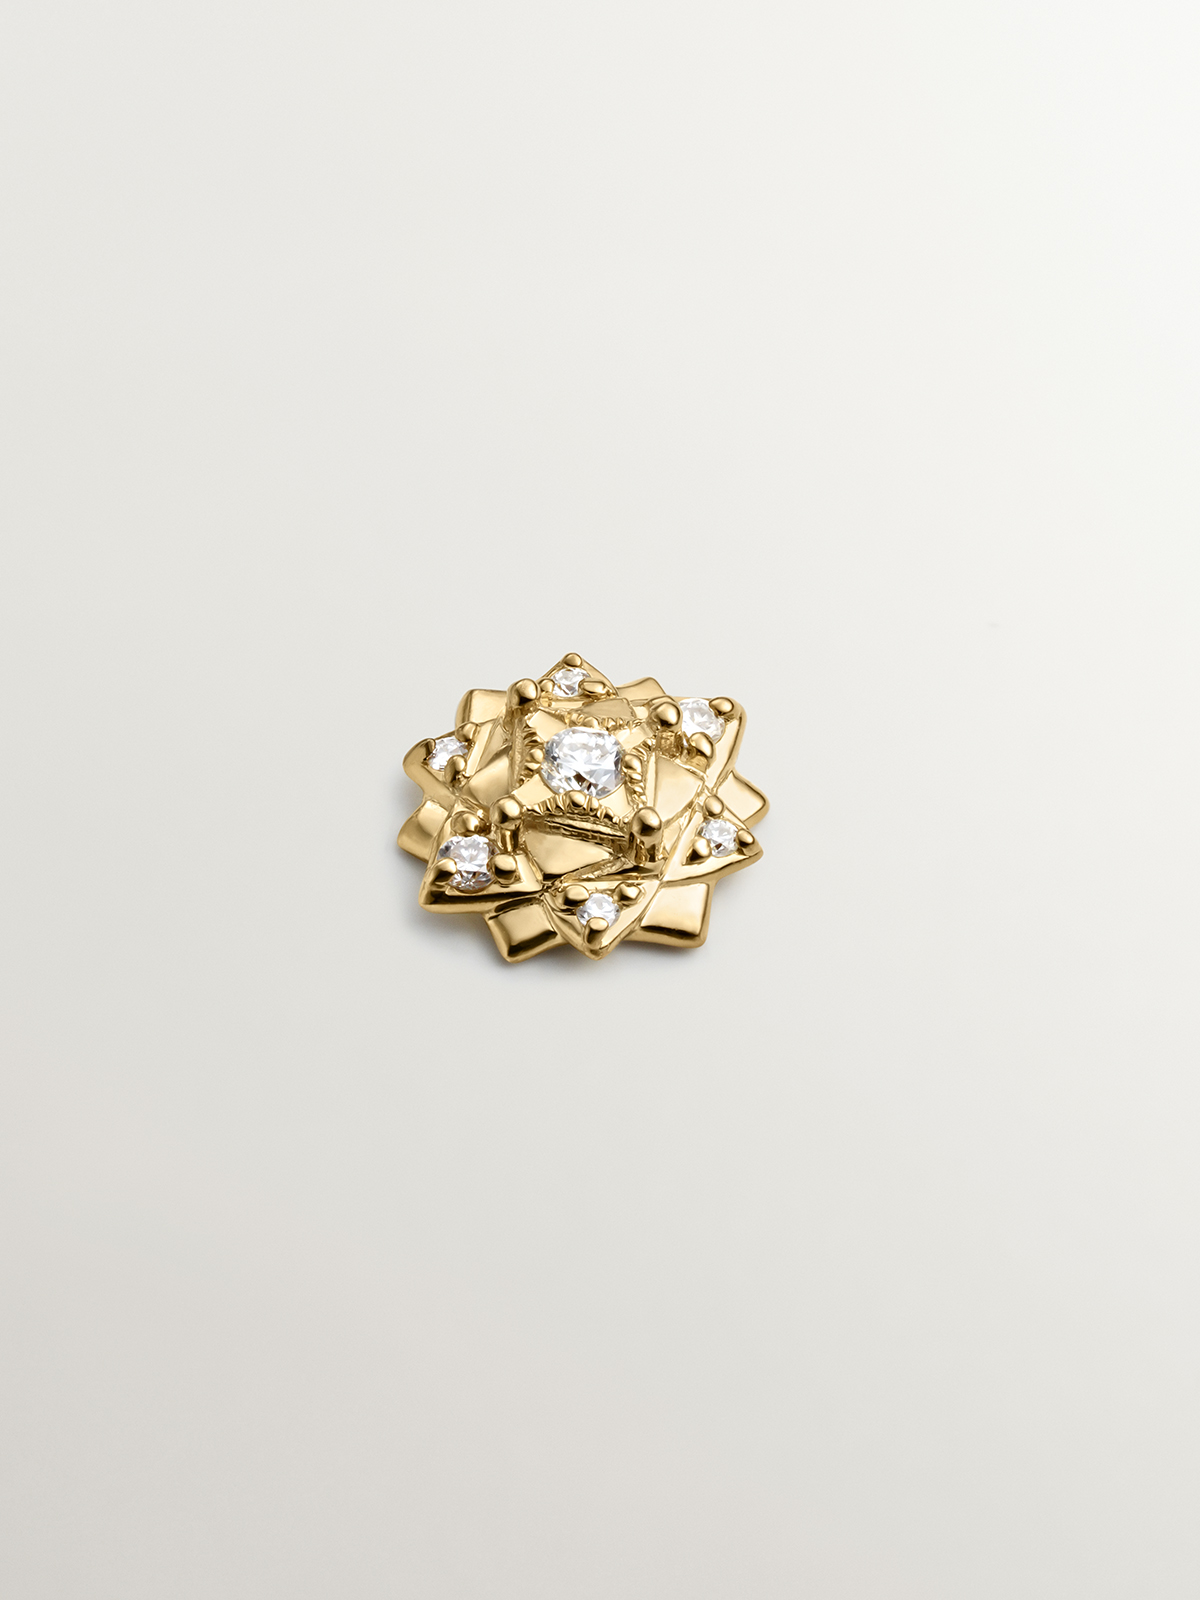 Piercing en or jaune 18K avec des diamants et forme de fleur